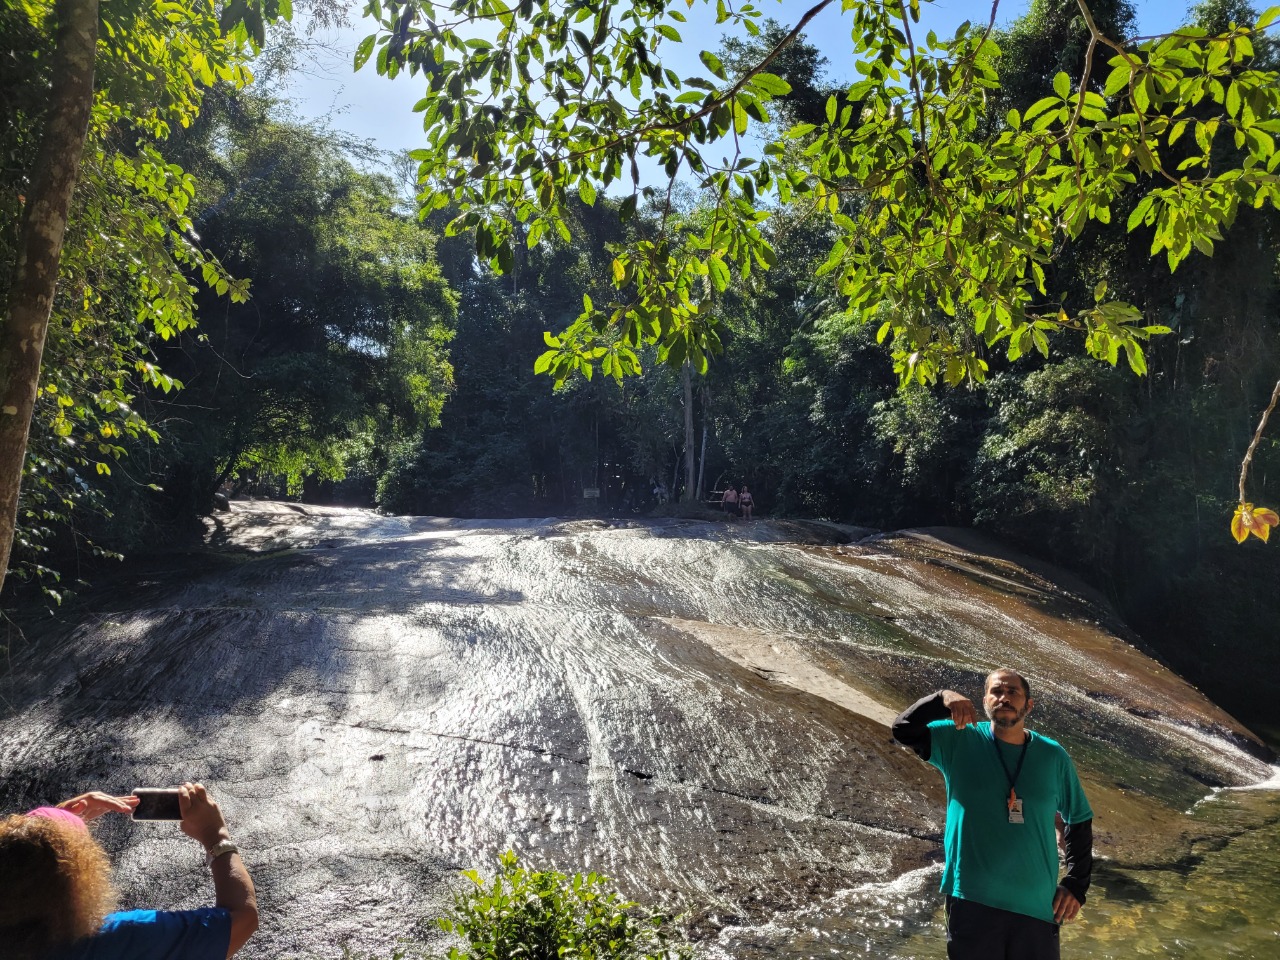 Pedra por onde os visitantes podem escorregar na Cachoeira do Tobogã, em Paraty. Foto: Miguel Trombini/iG Turismo